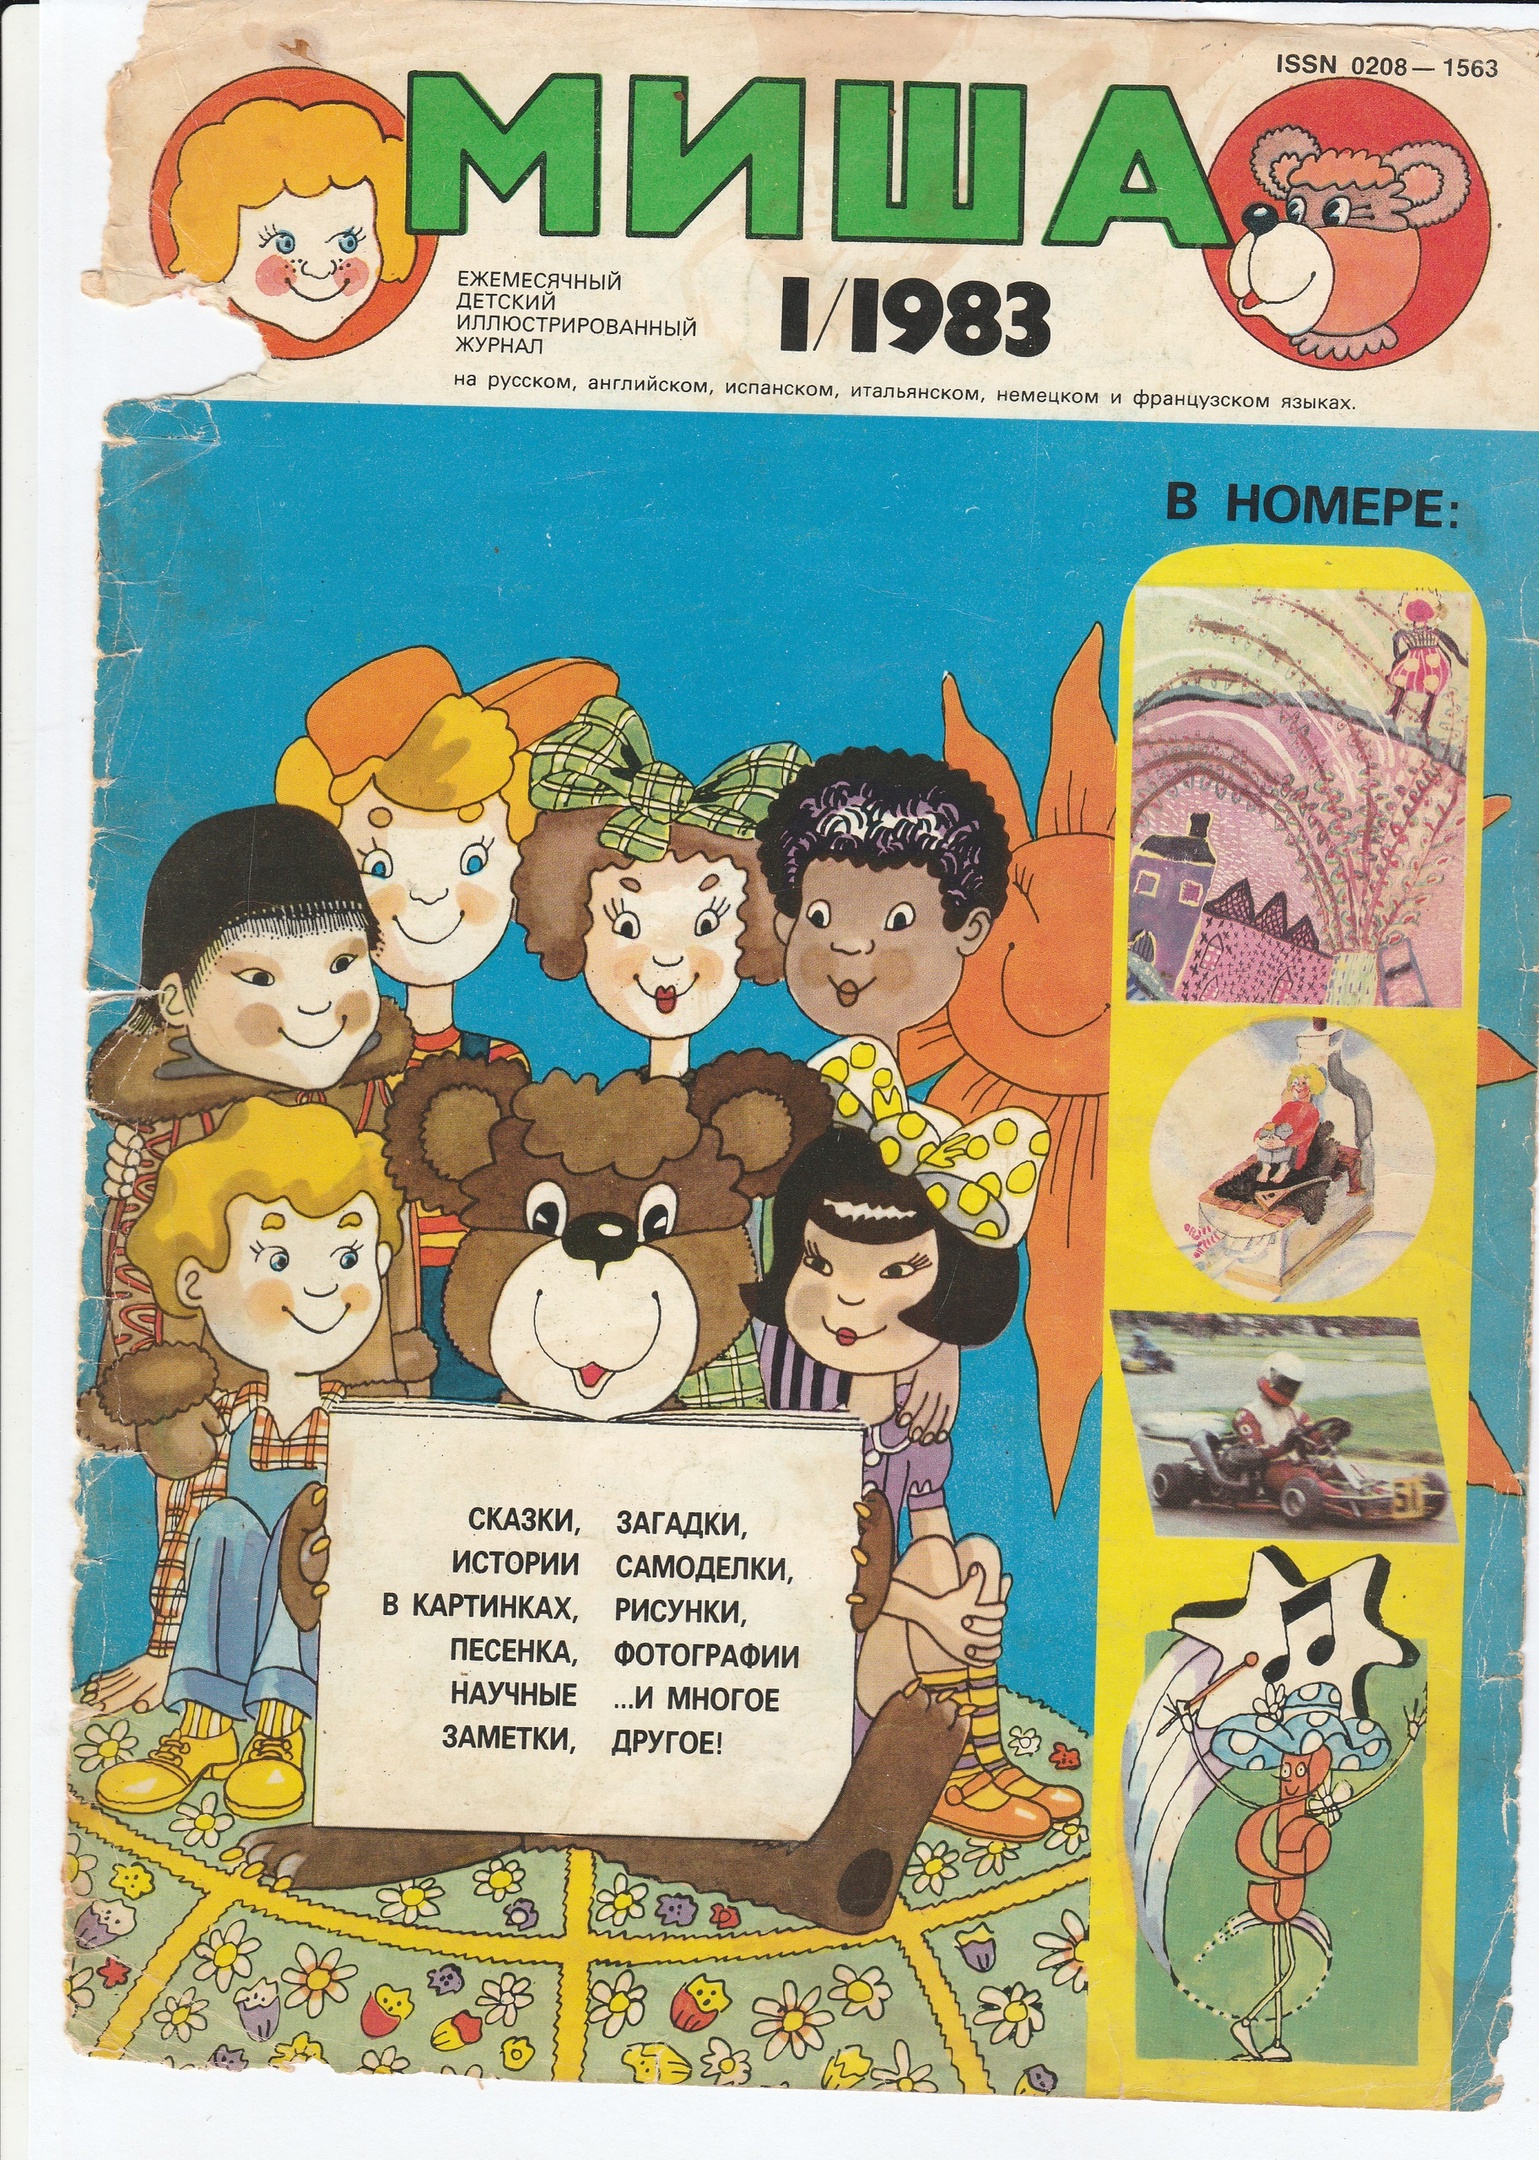 40 лет назад вышел первый номер журнала "Миша"